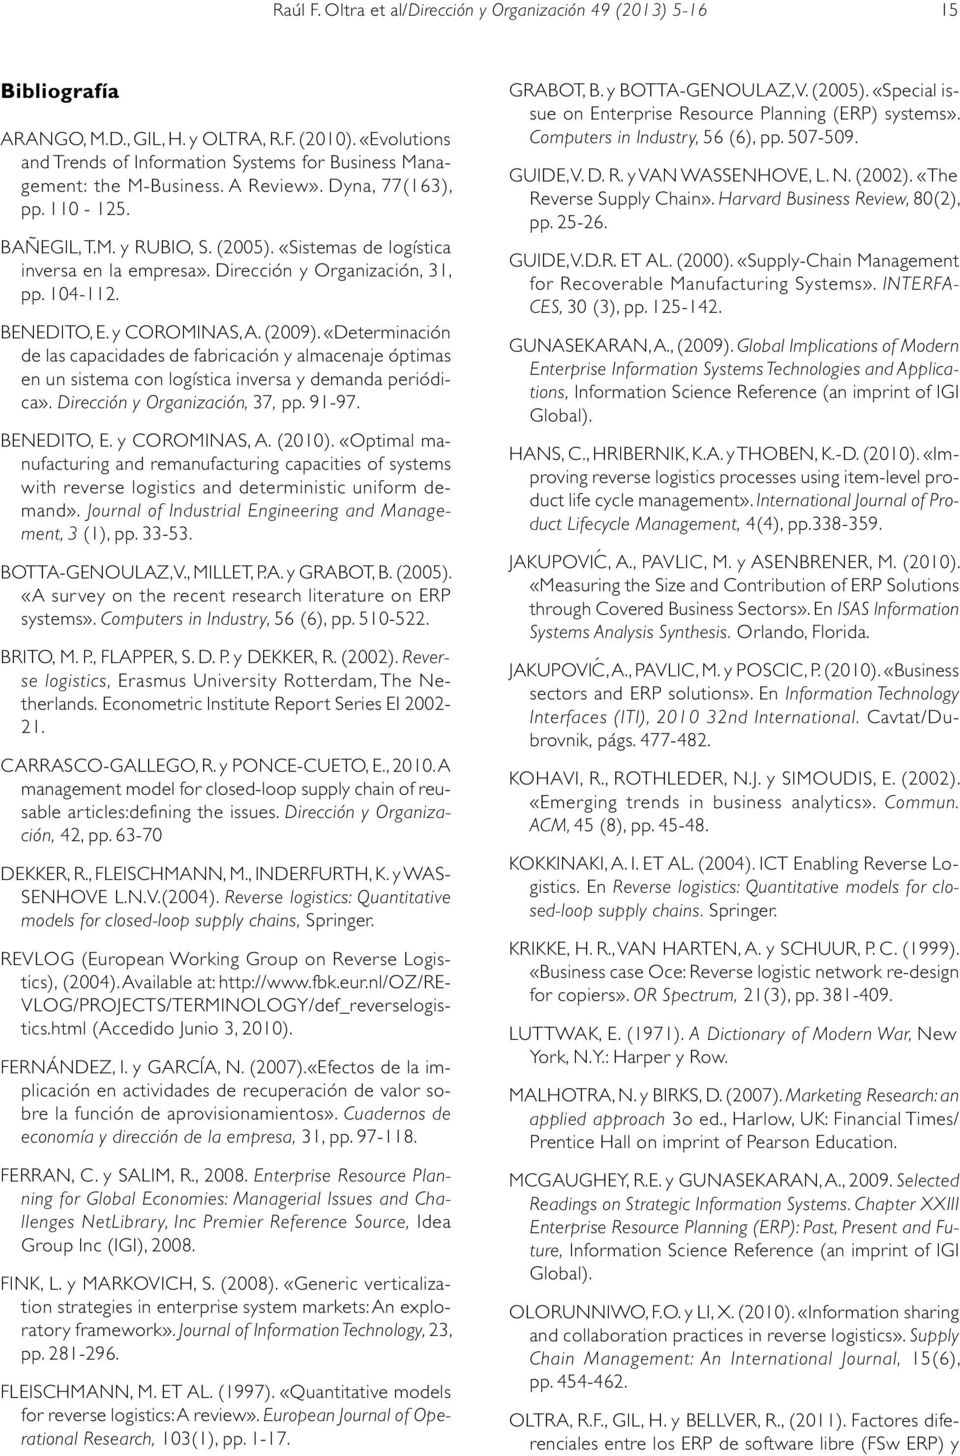 «Sistemas de logística inversa en la empresa». Dirección y Organización, 31, pp. 104-112. BENEDITO, E. y COROMINAS, A. (2009).